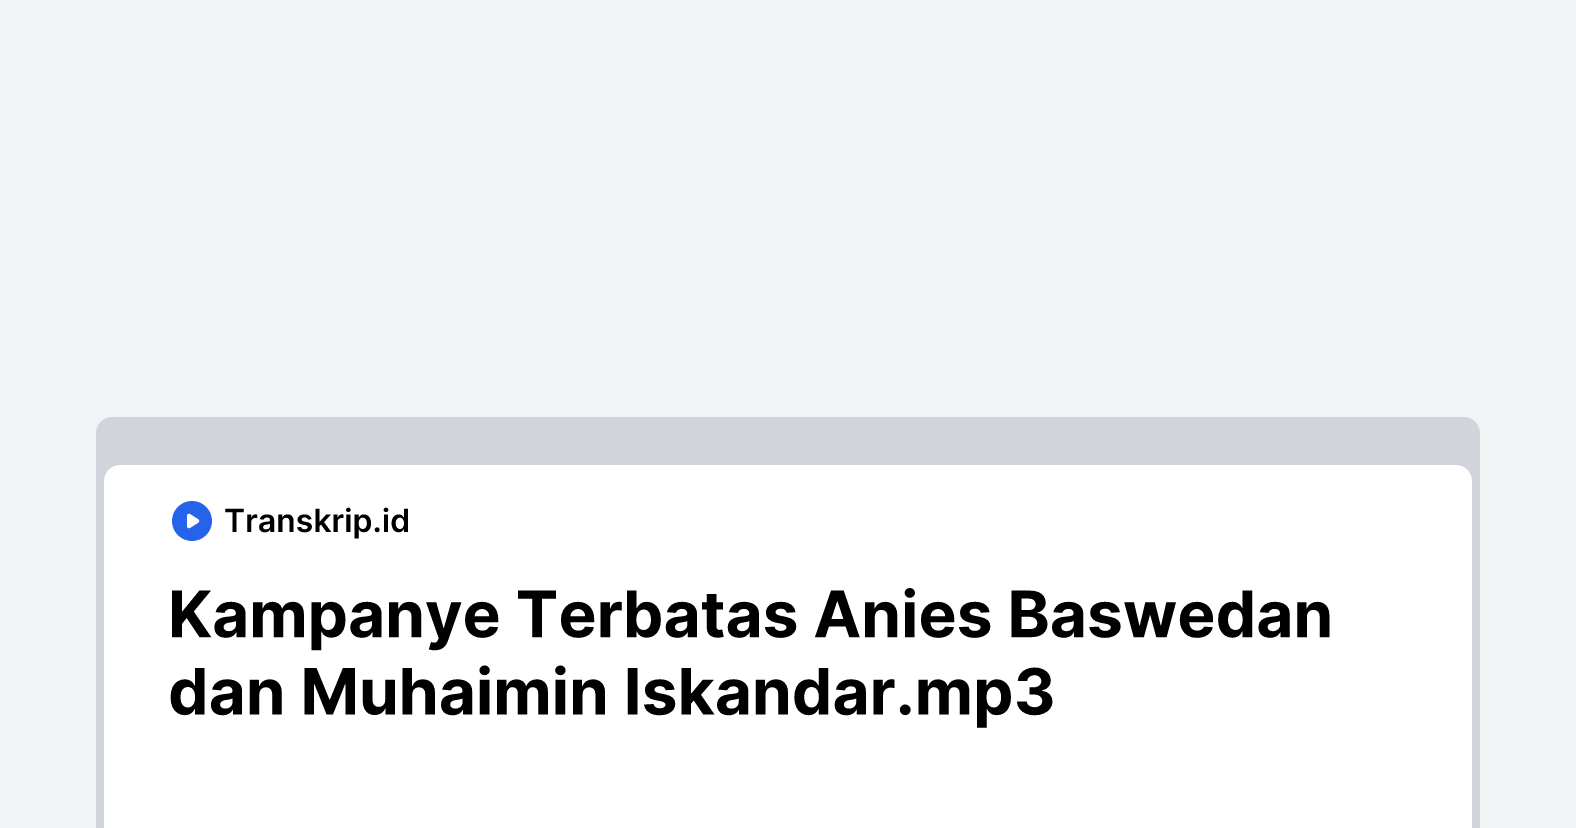 Kampanye Terbatas Anies Baswedan dan Muhaimin Iskandar.mp3